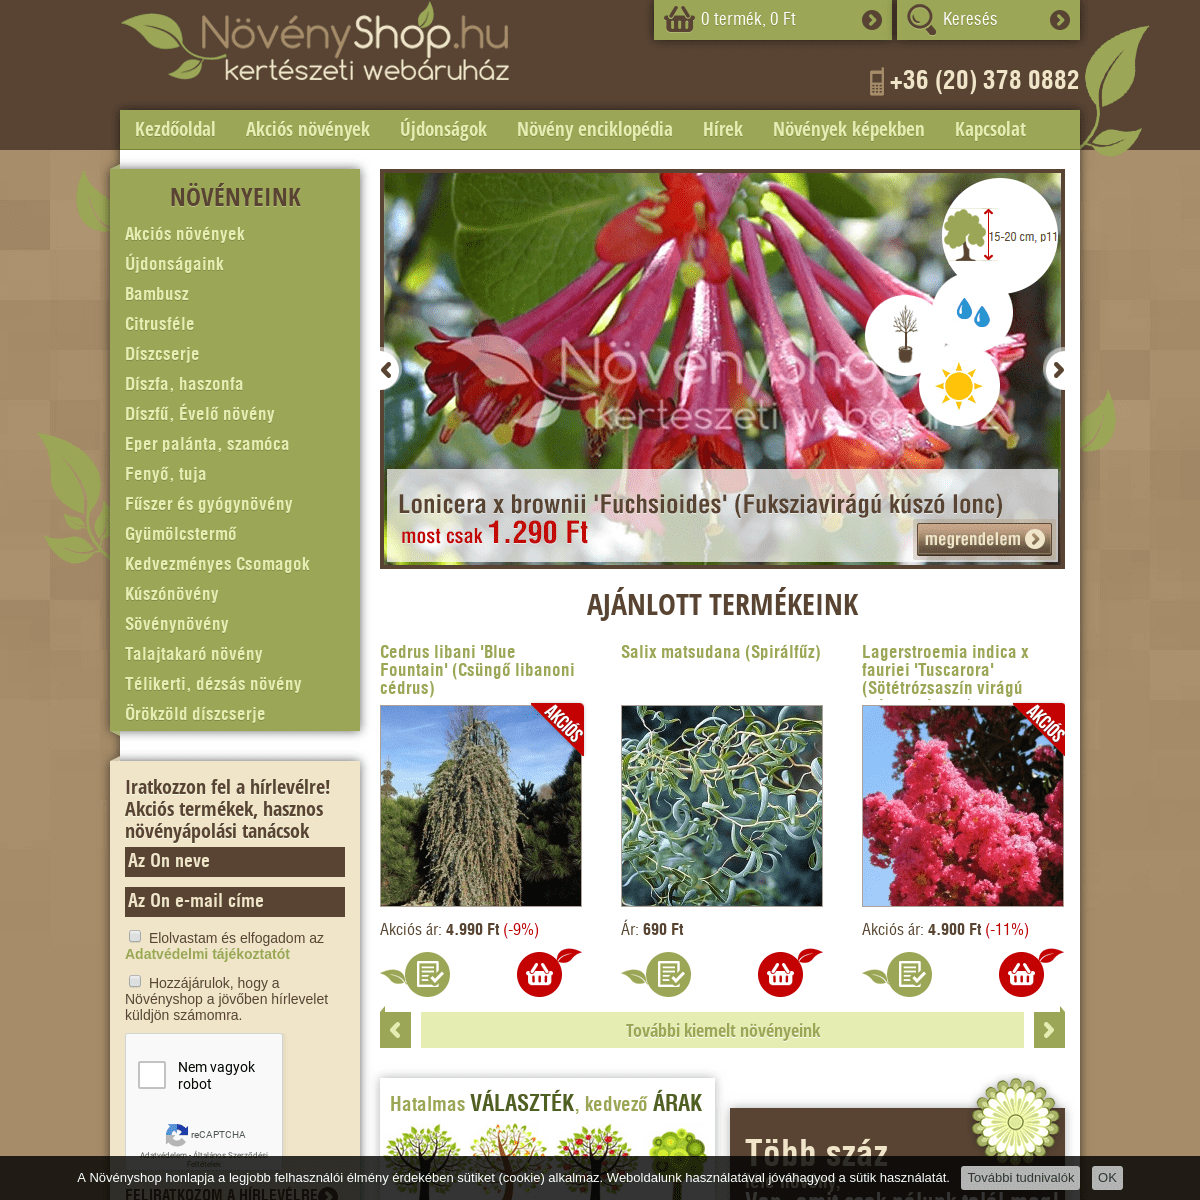 Növényshop.hu kertészeti és dísznövény webáruház | novenyshop.hu